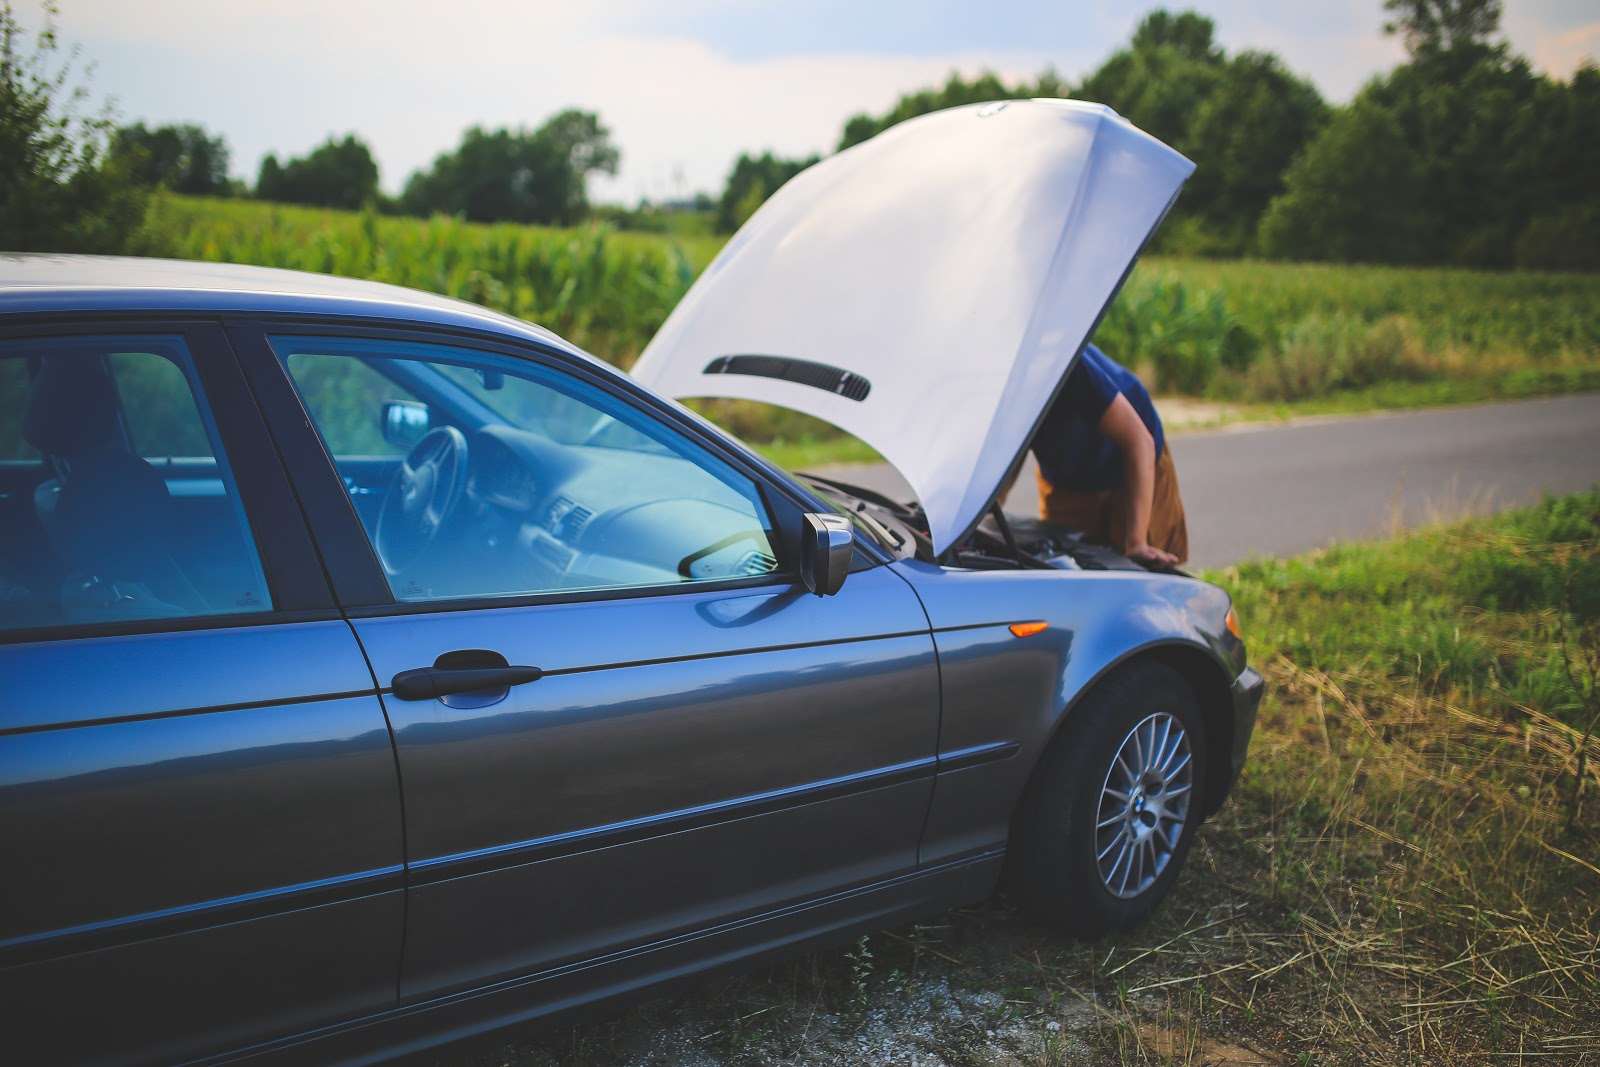 Broken down car summer travel tips